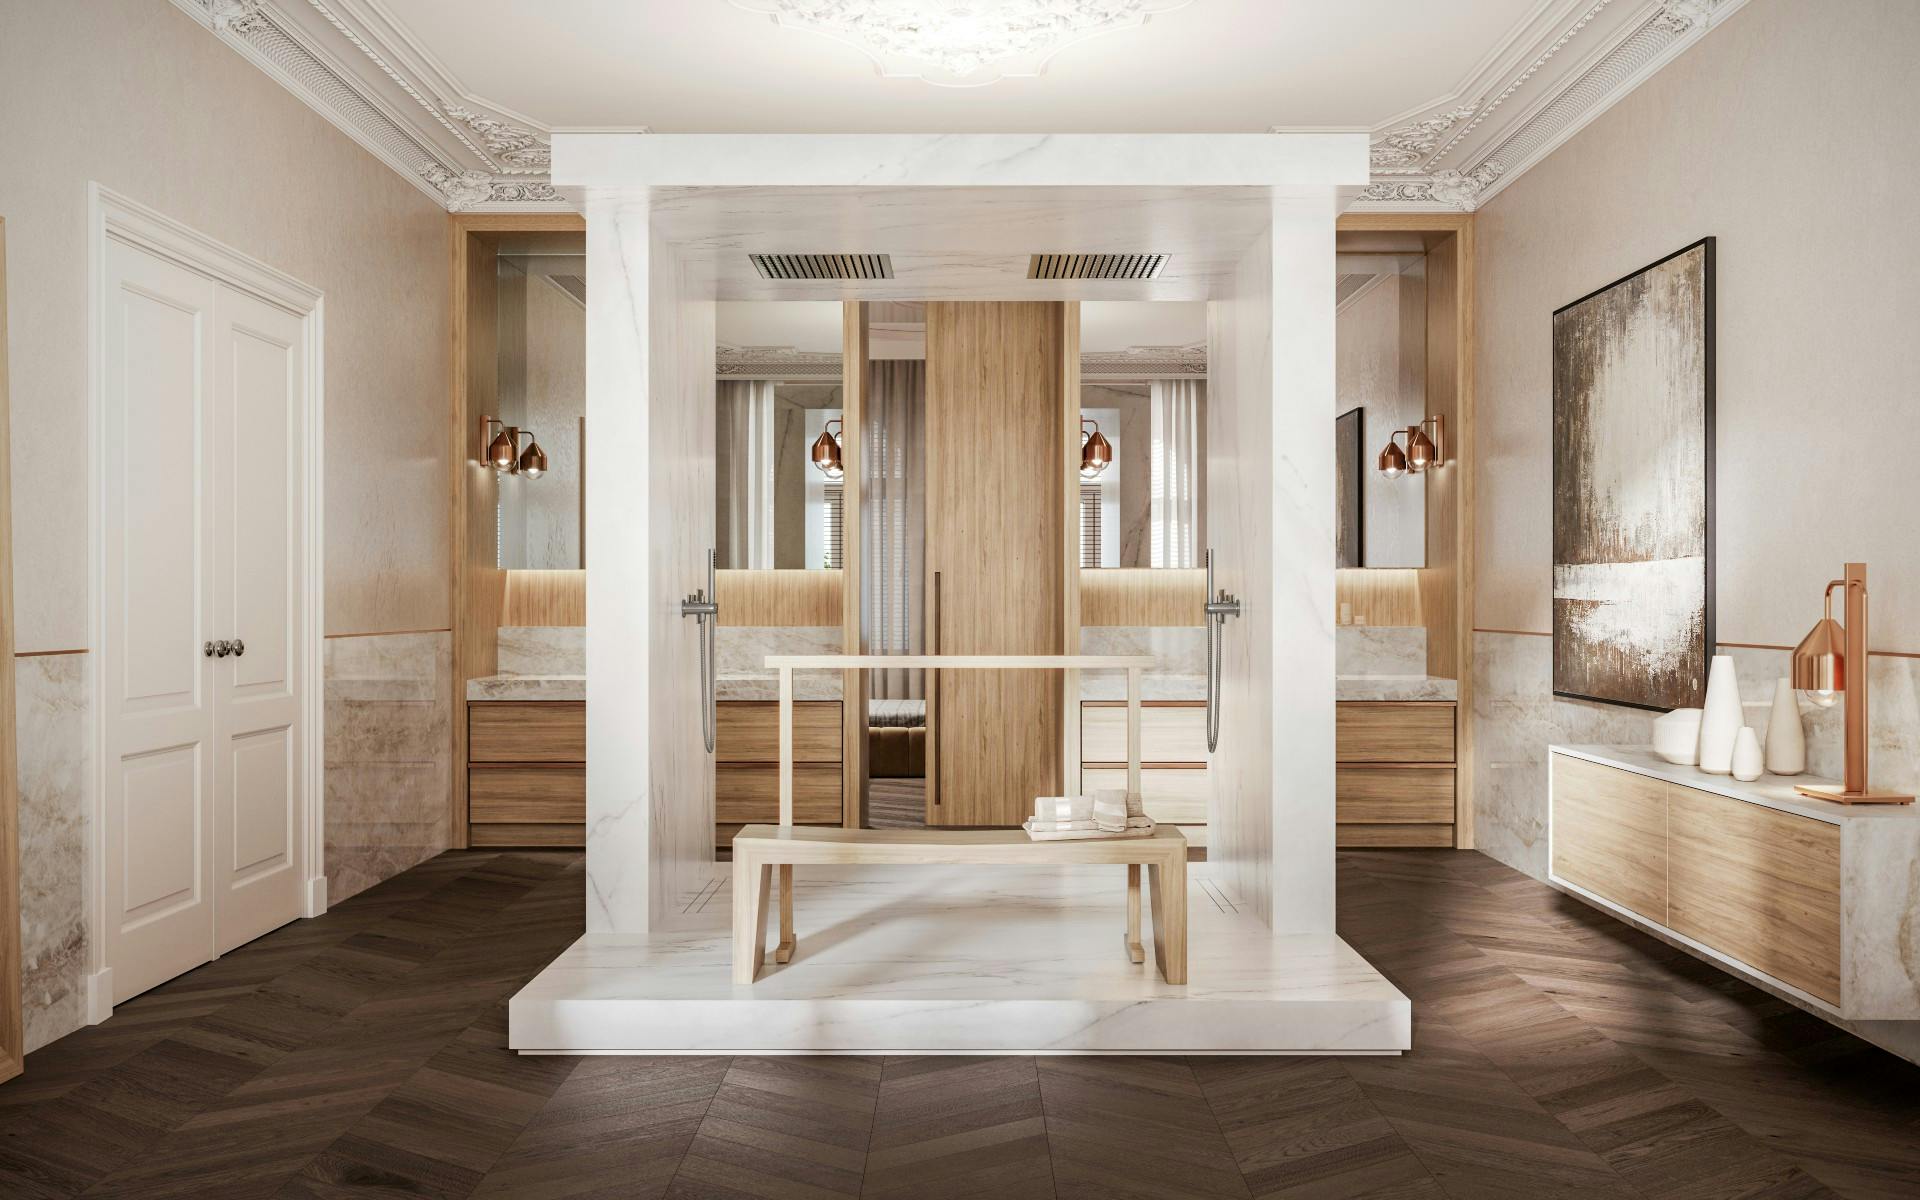 Numero immagine 38 della sezione corrente di Sawaru: a sensory bathroom designed by Claudia Afshar to appeal to the sense of touch di Cosentino Italia